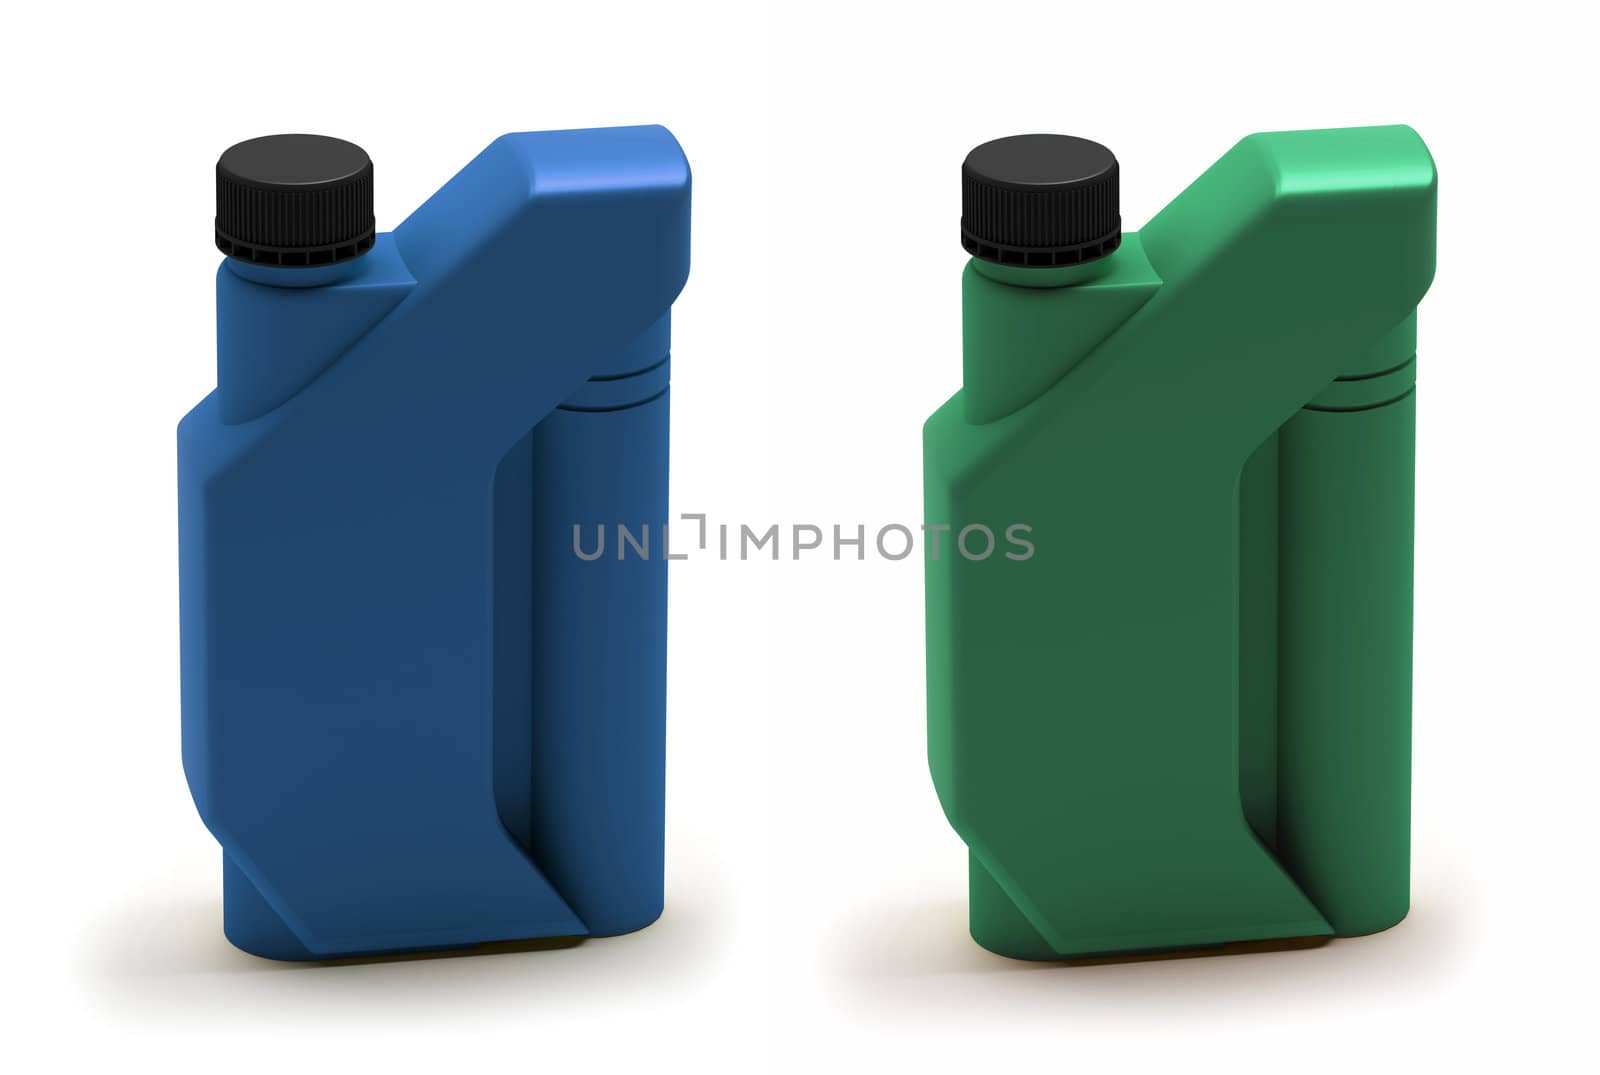 Motor Oil Bottle, Canister. Motor oil bottle blue and green plastic